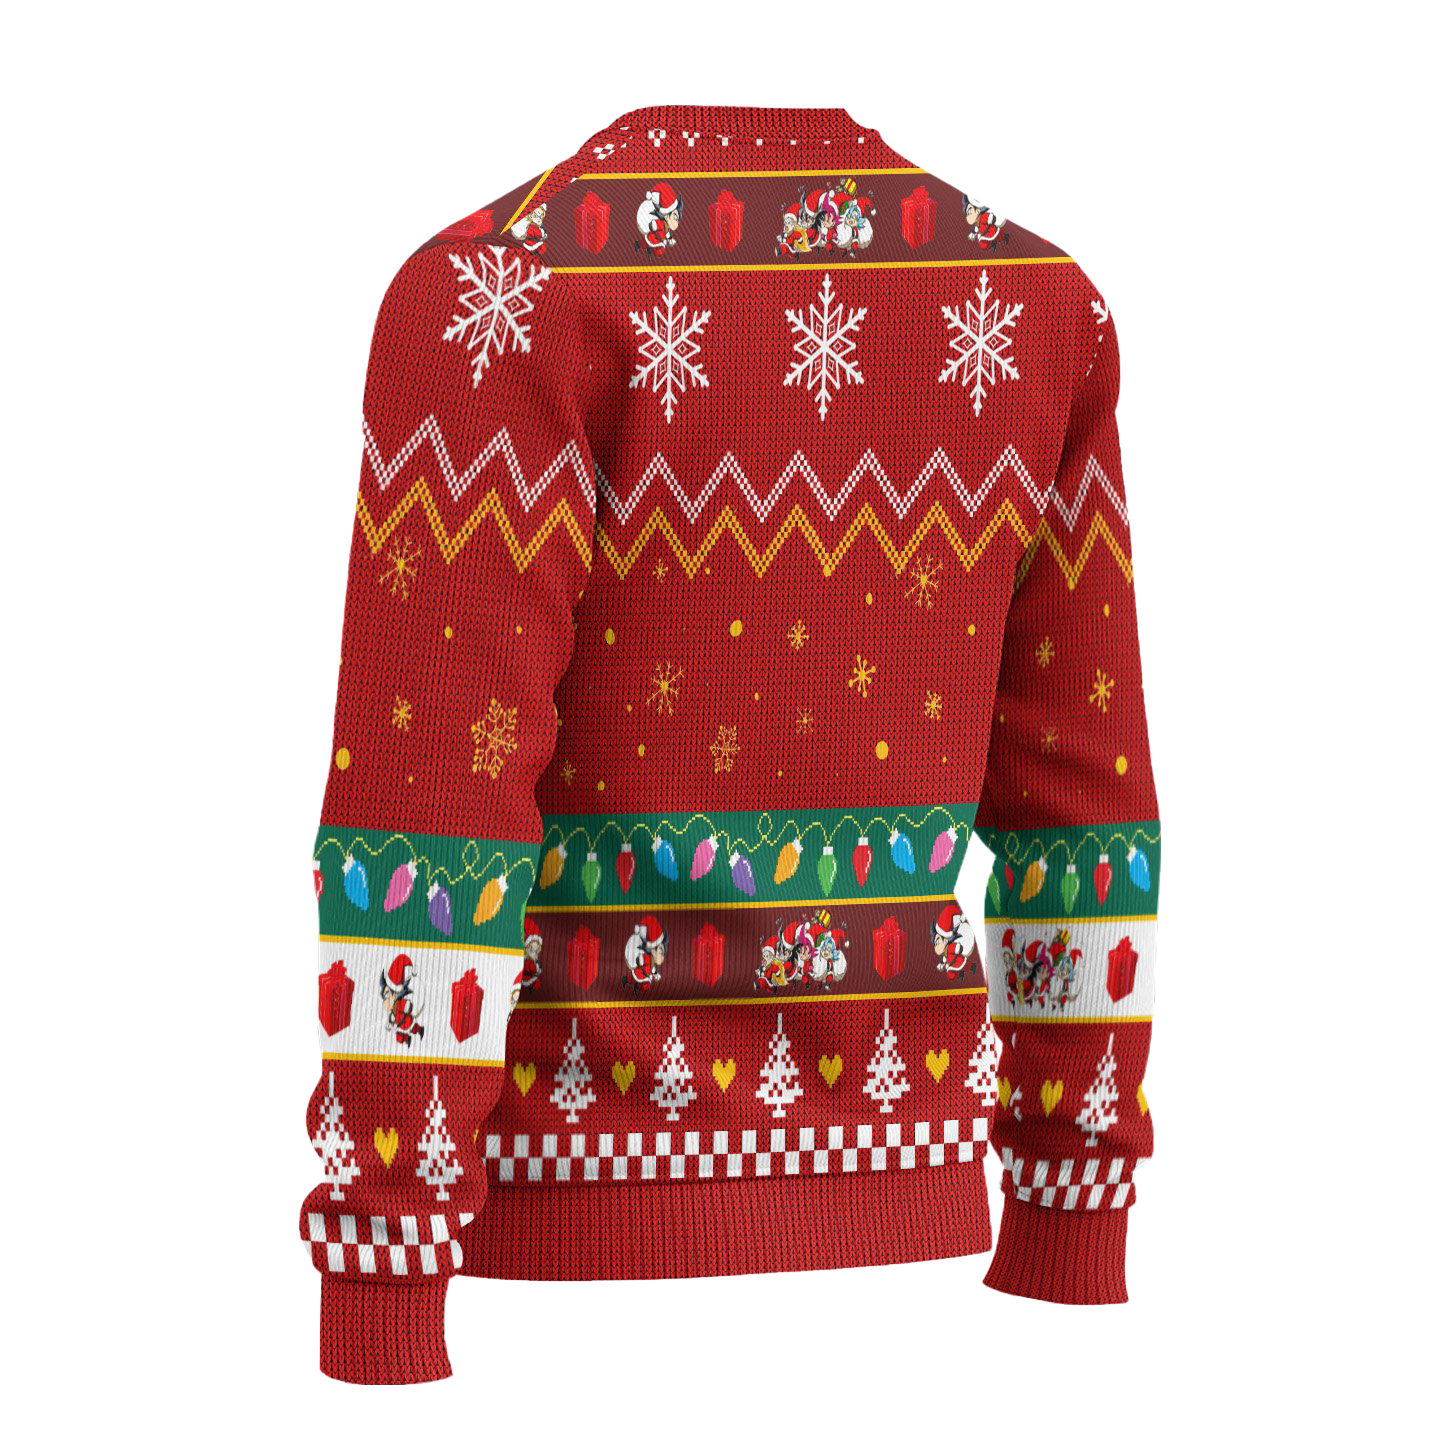 Vegeta Anime Ugly Christmas Sweater Dragon Ball Xmas Gift